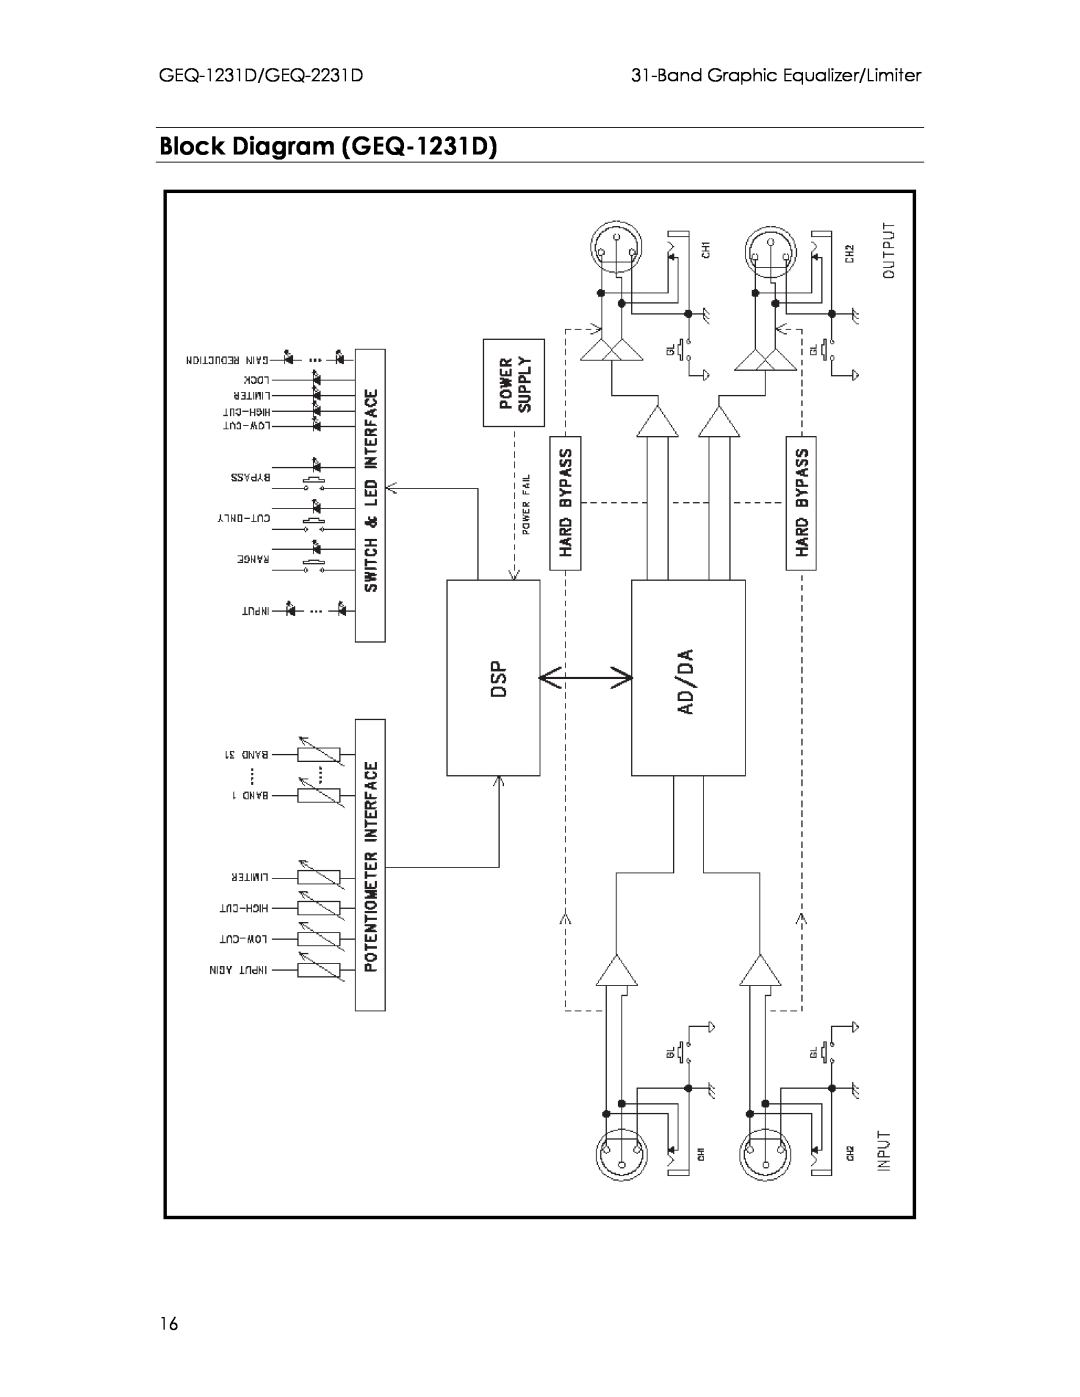 Intermec manual Block Diagram GEQ-1231D, GEQ-1231D/GEQ-2231D, BandGraphic Equalizer/Limiter 